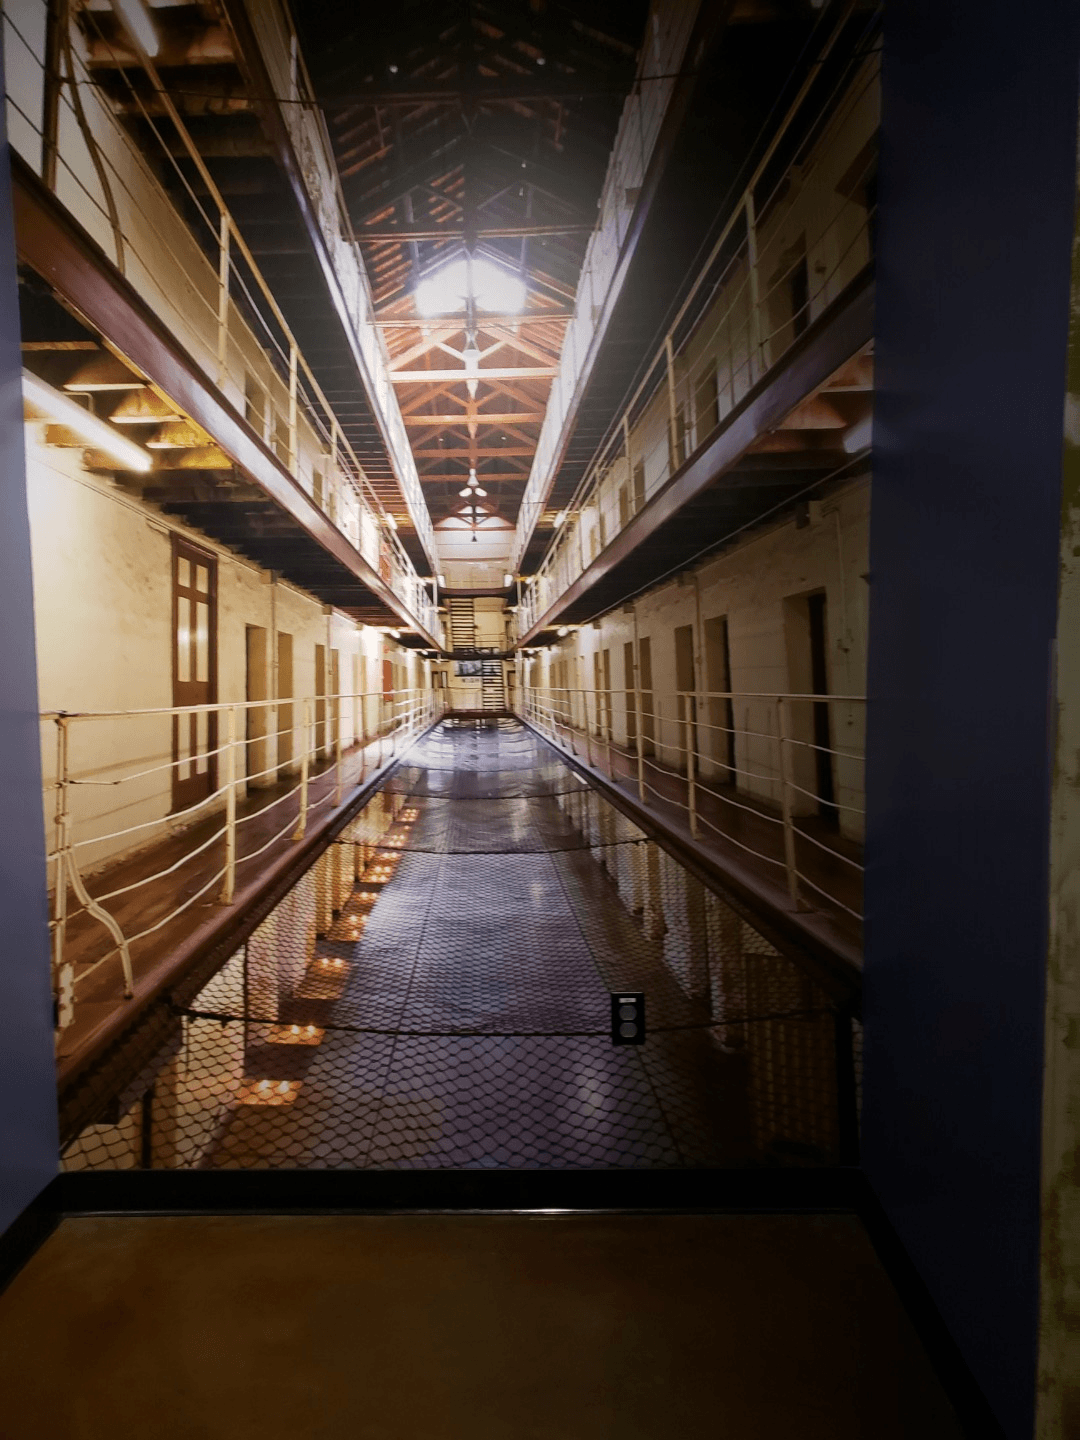 forge of empire alcatraz